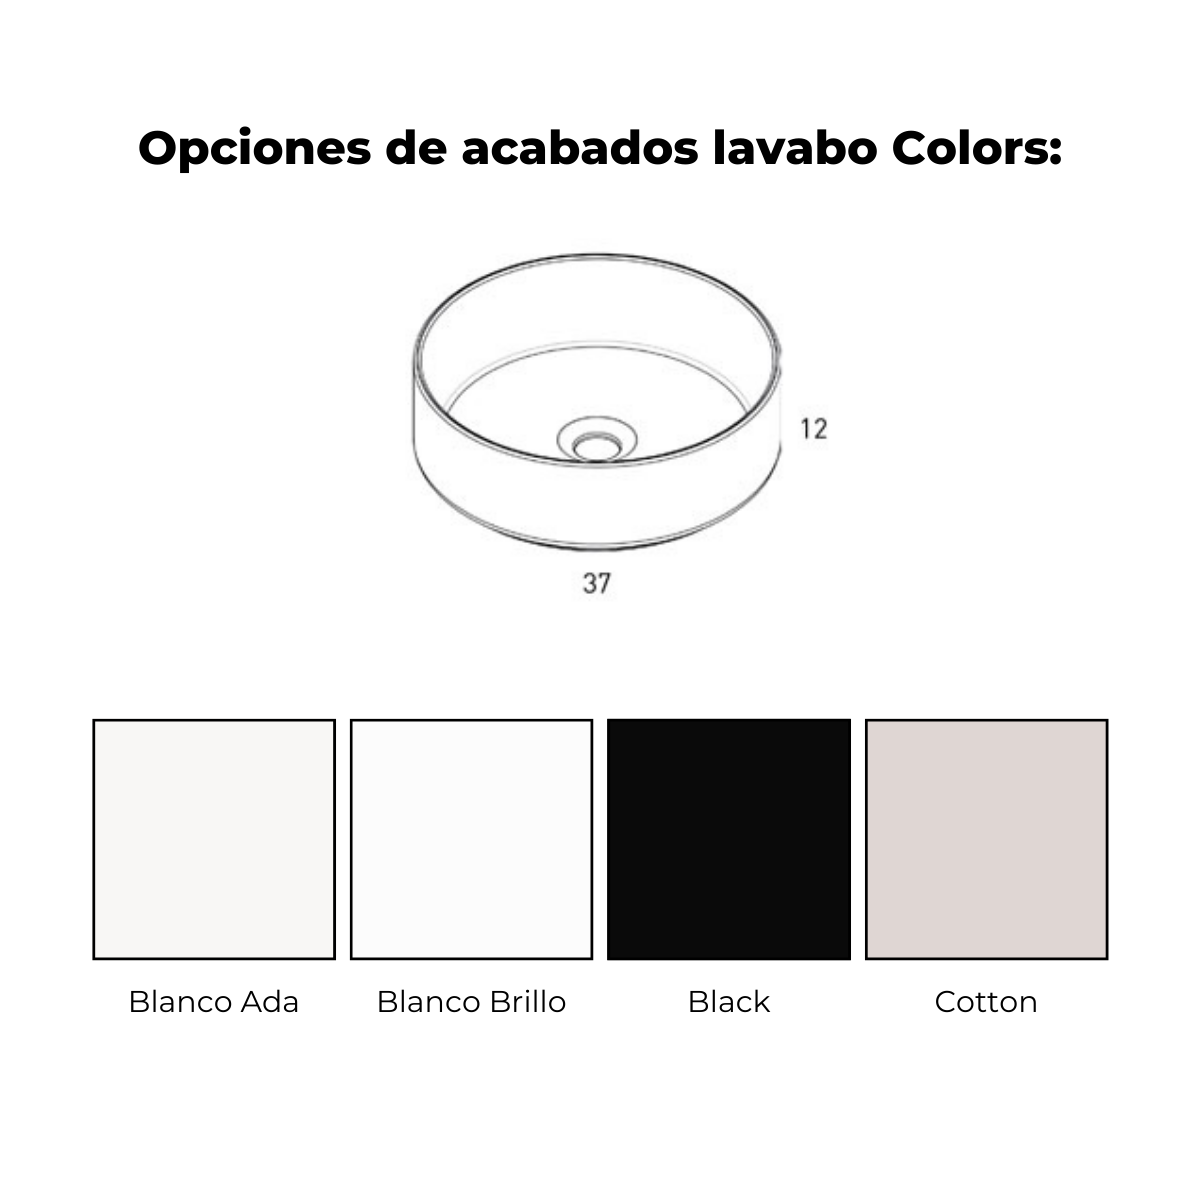 lavabo colors arco cotton 3c